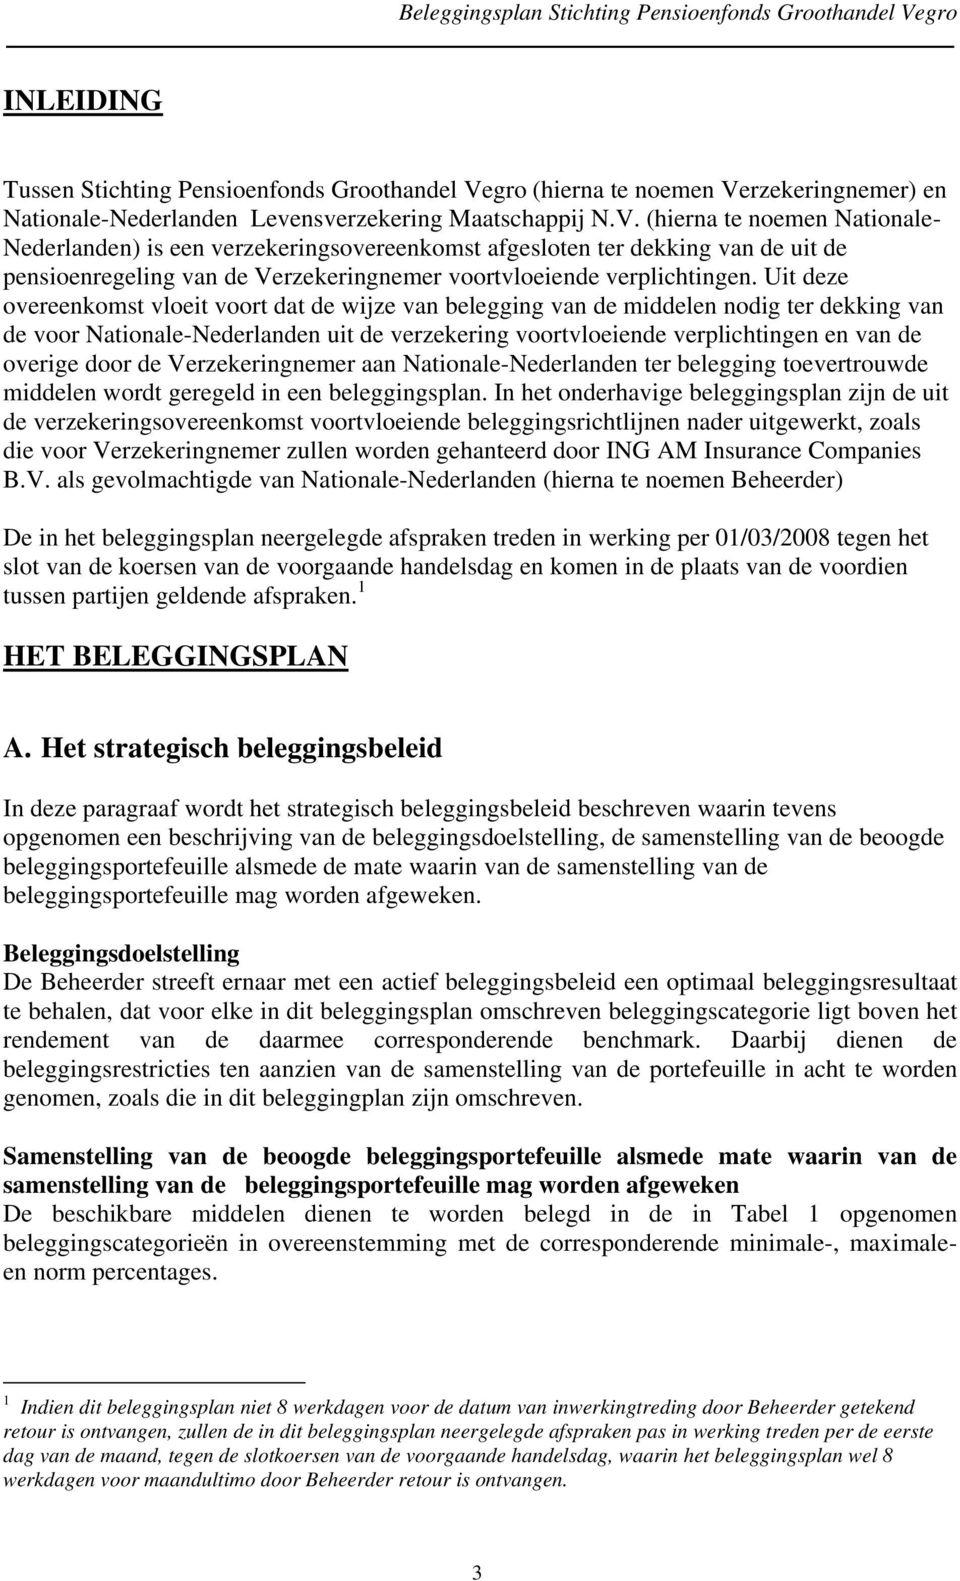 rzekeringnemer) en Nationale-Nederlanden Levensverzekering Maatschappij N.V.